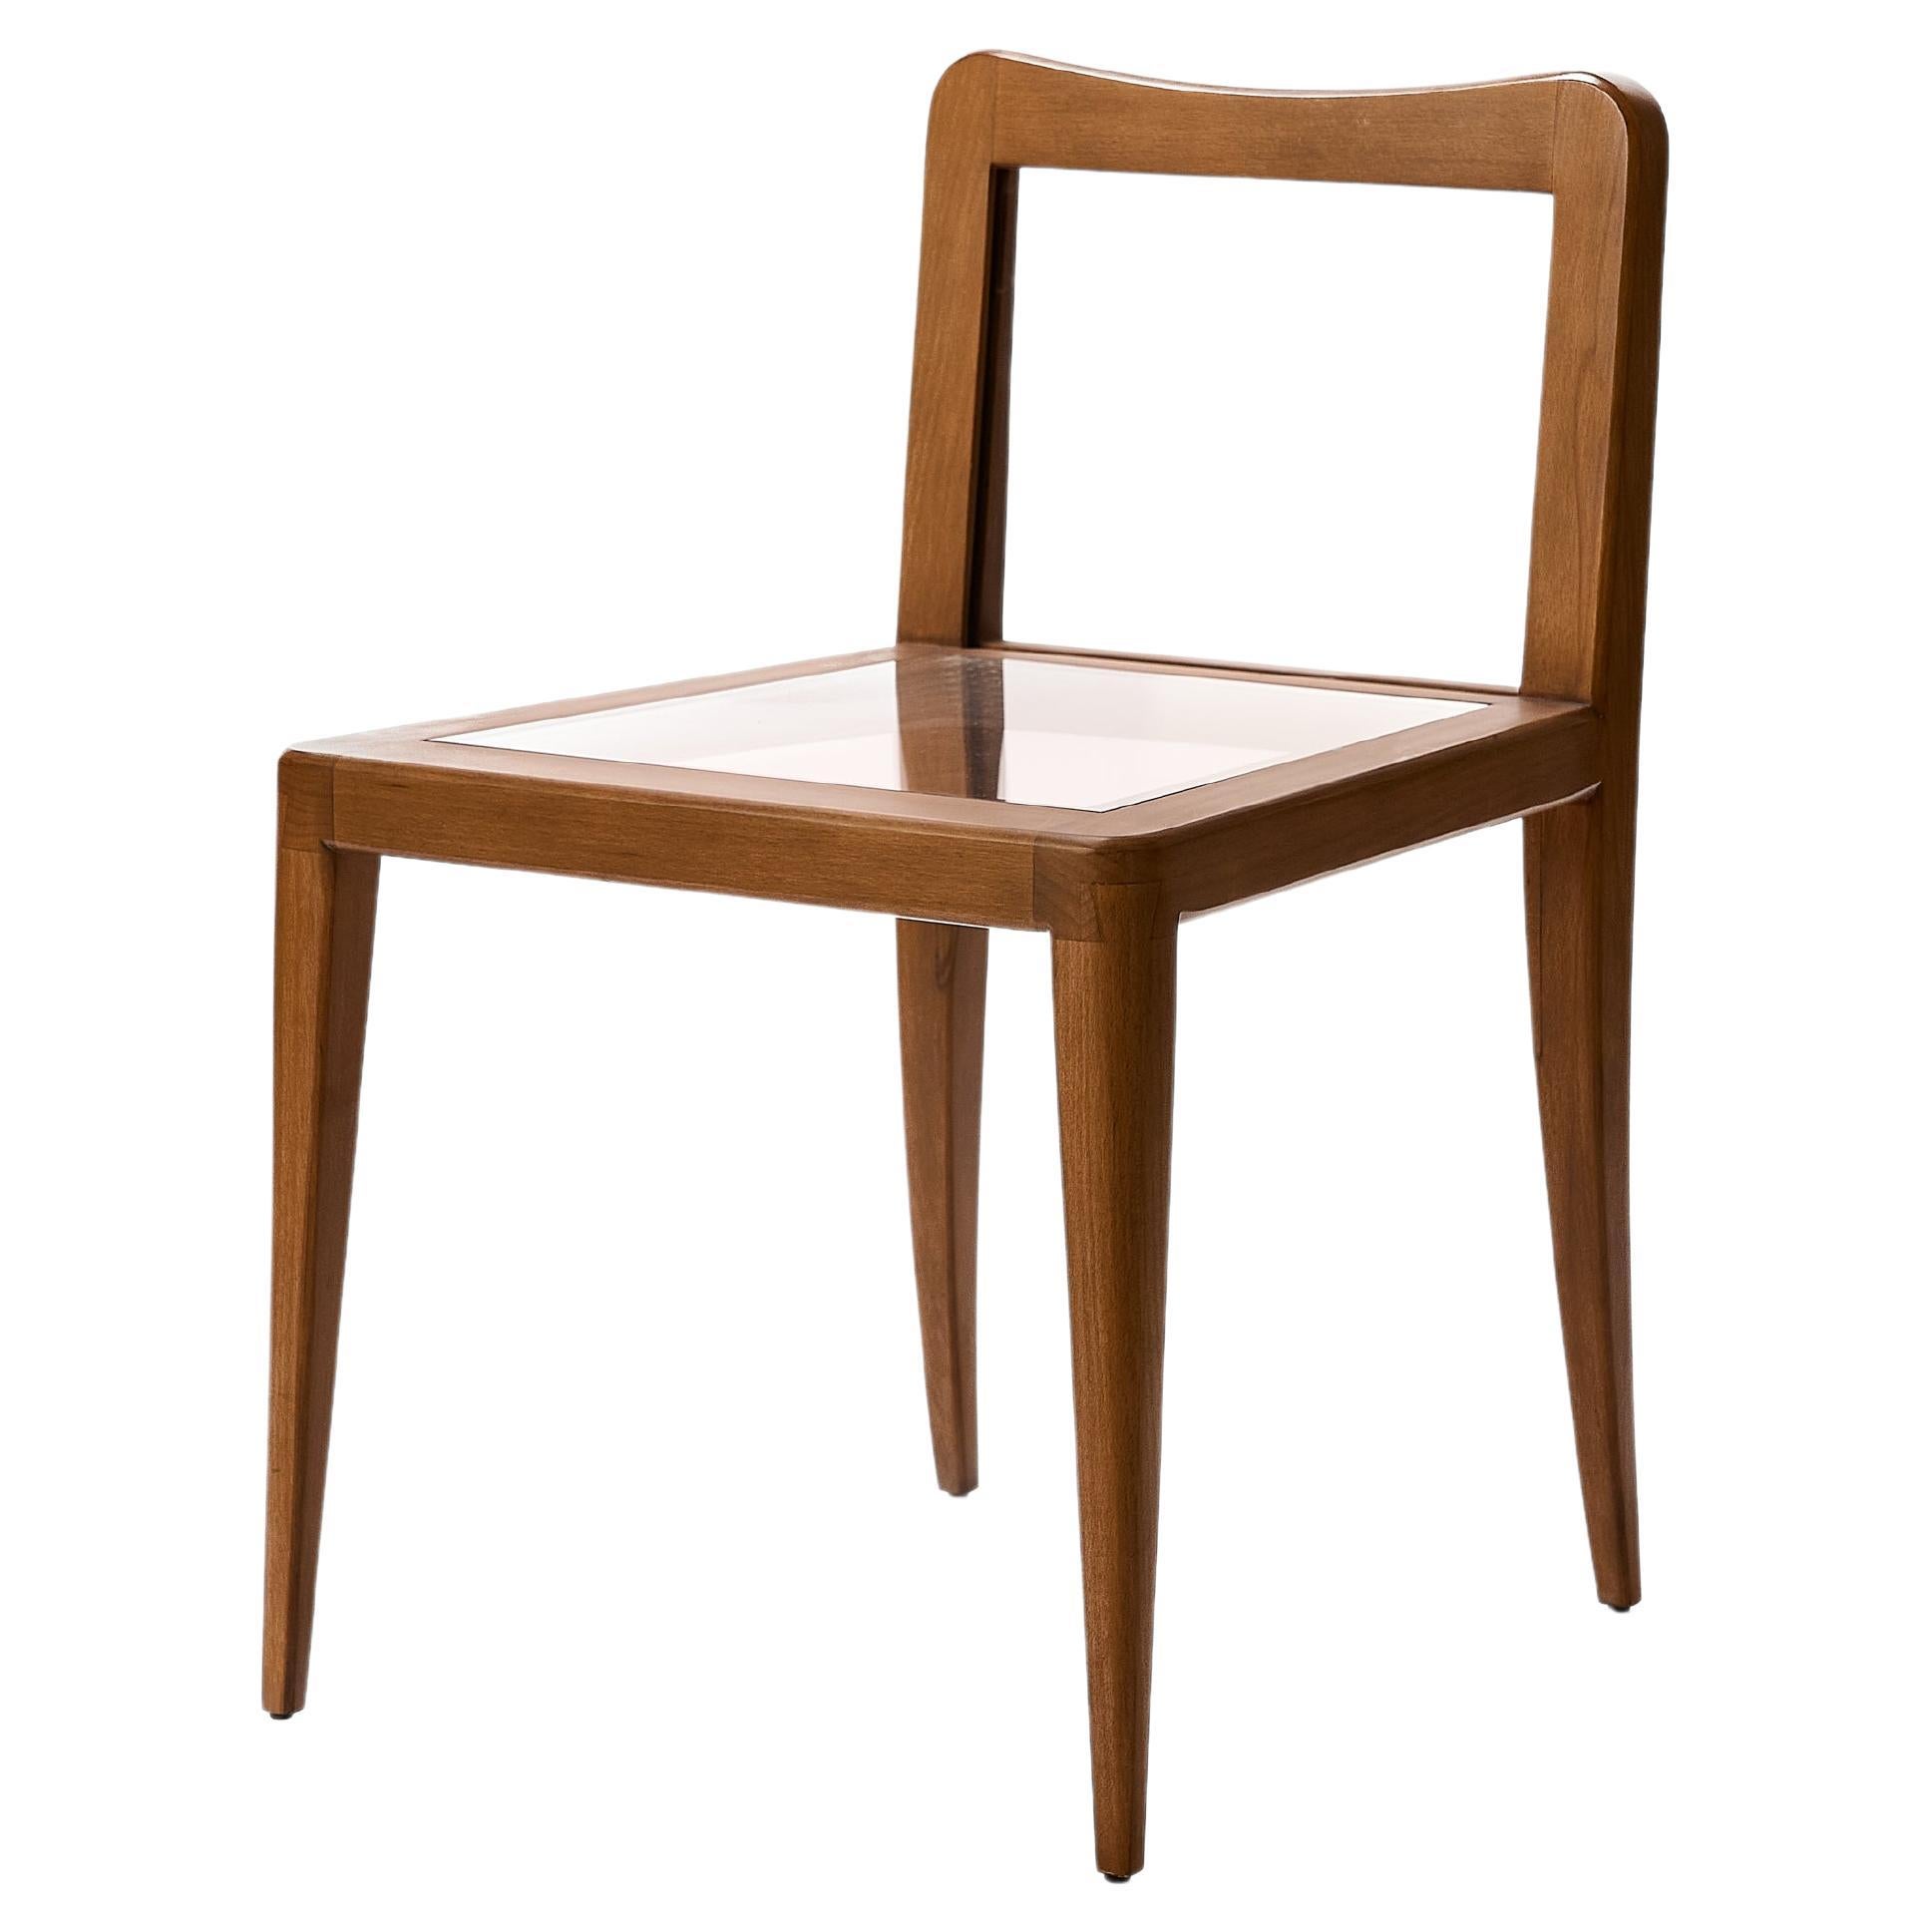 Petite chaise flottante en bois, chaise en bois de noyer et acrylique